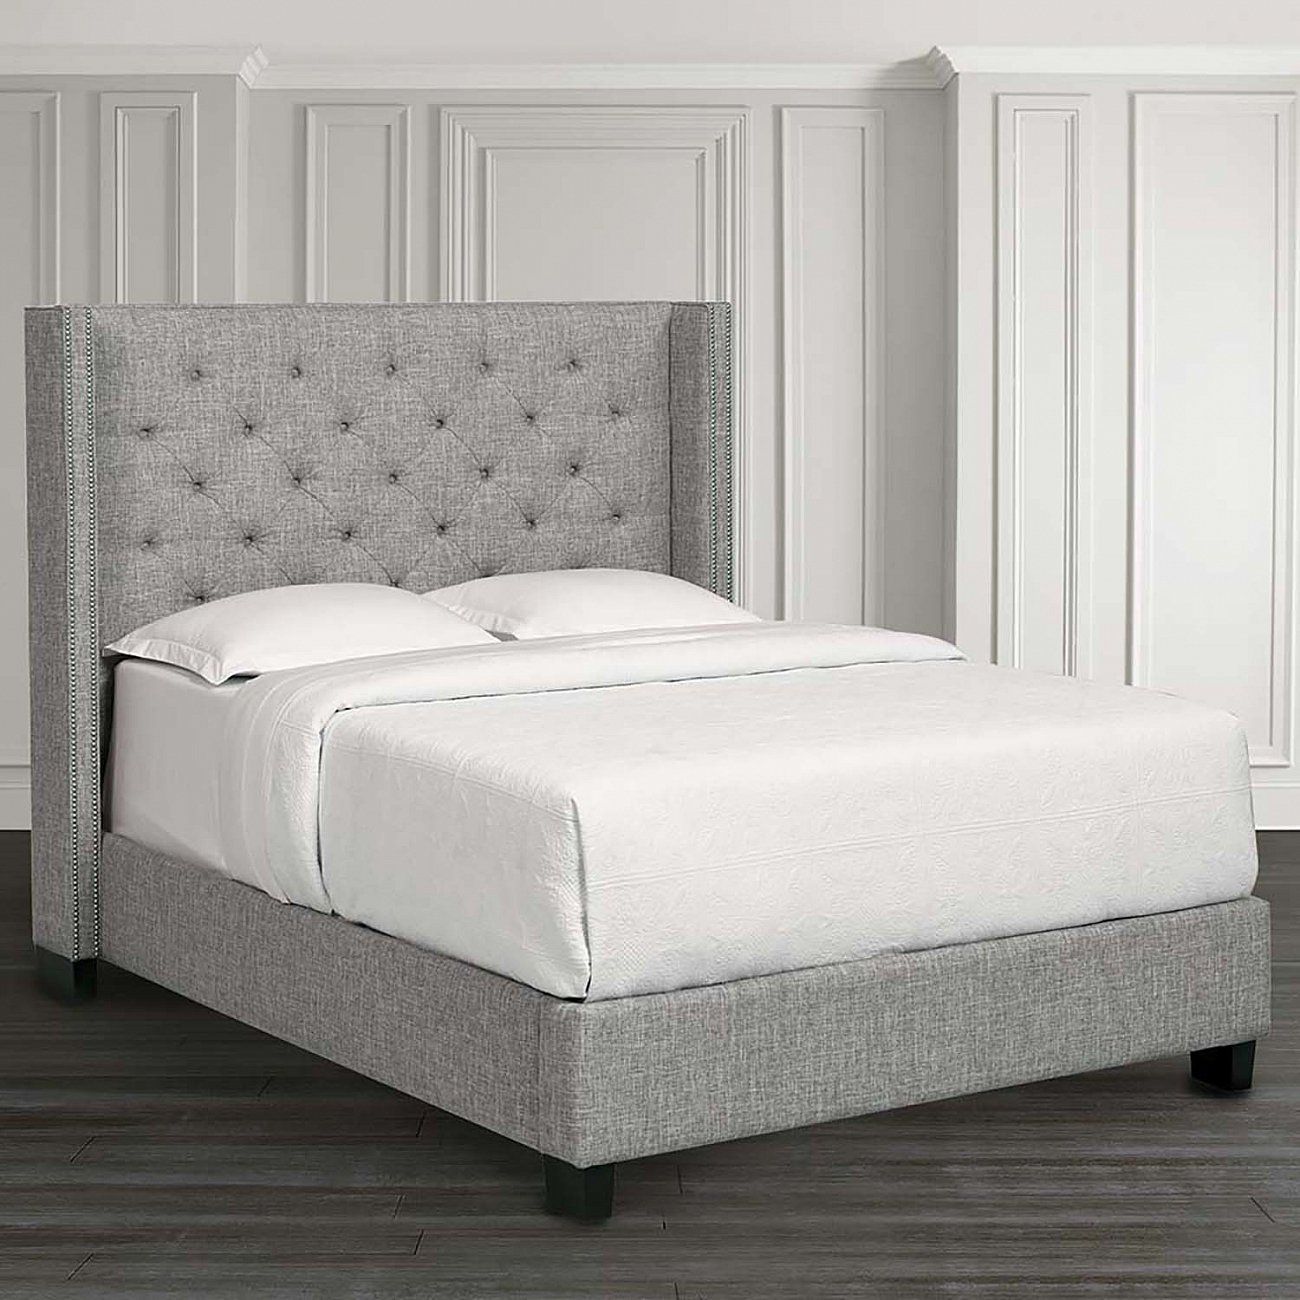 Кровать двуспальная 160х200 см с гвоздиками и каретной стяжкой серая Wing